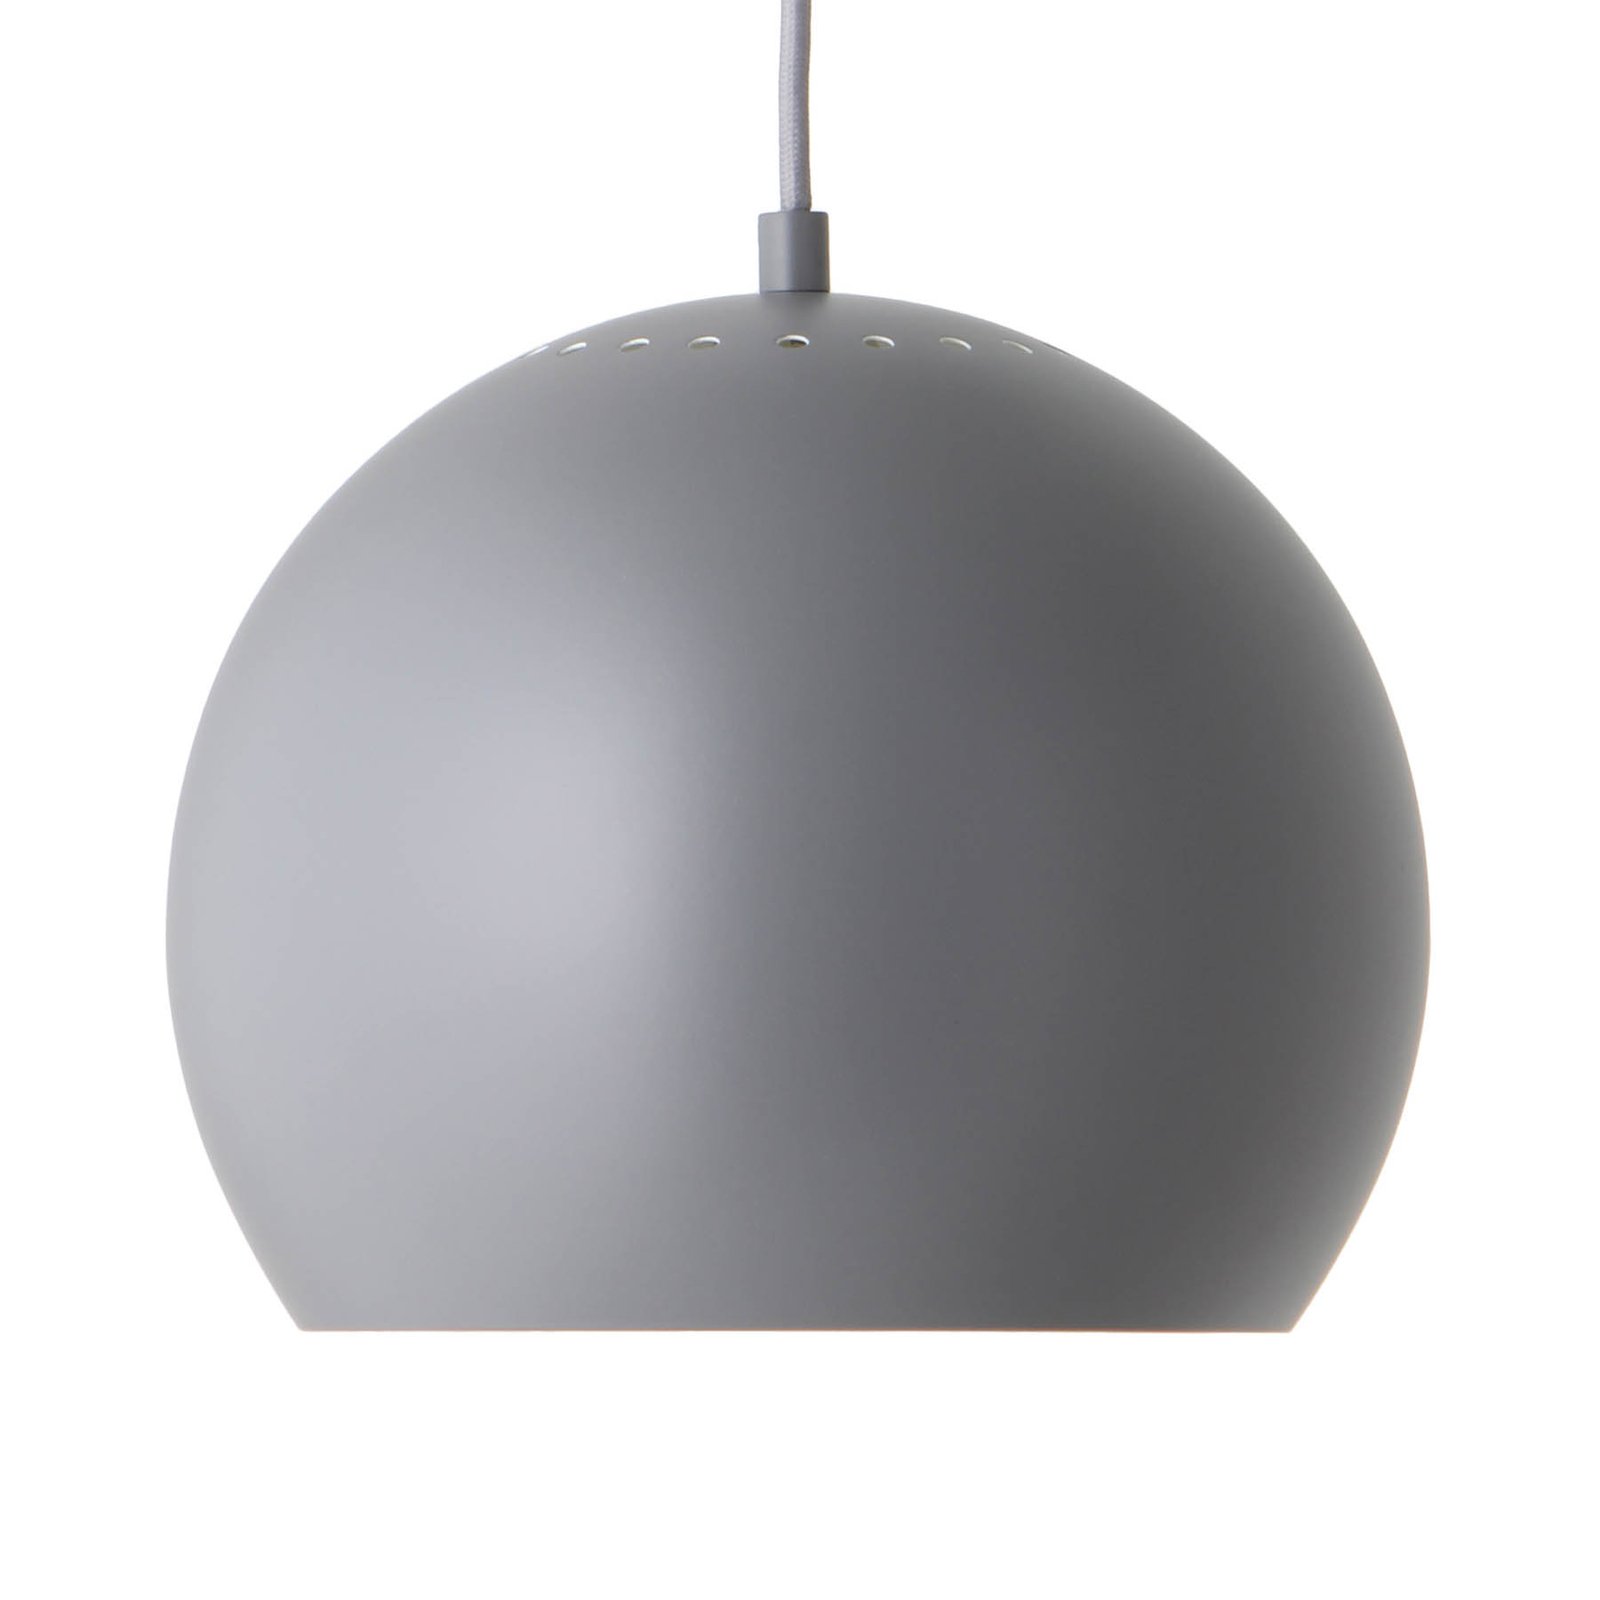 FRANDSEN Ball hanglamp, Ø 25 cm, lichtgrijs mat